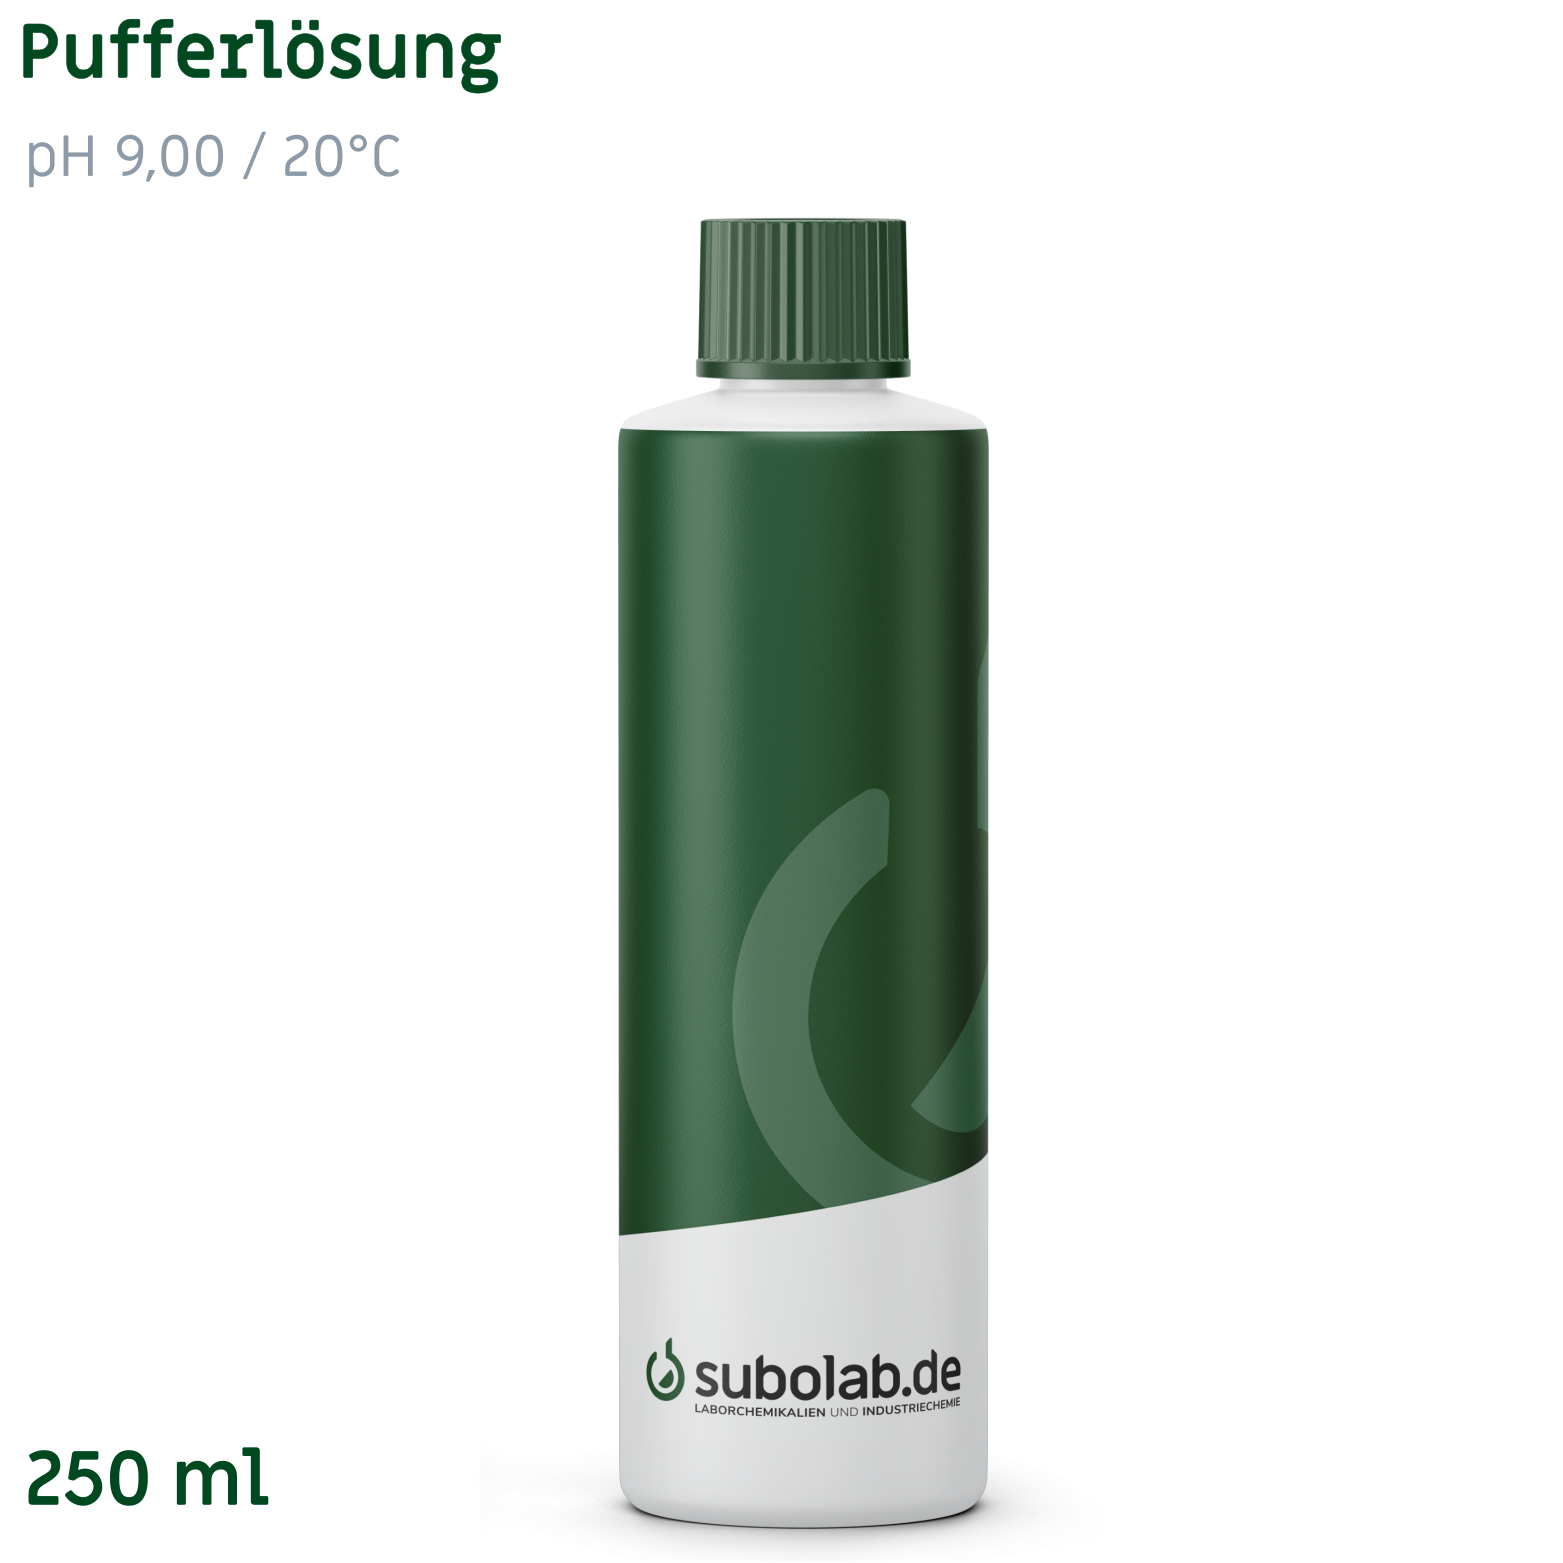 Bild von Pufferlösung pH 9,00 / 20°C (Borsäure, Kaliumchlorid, Natronlauge) (250 ml)